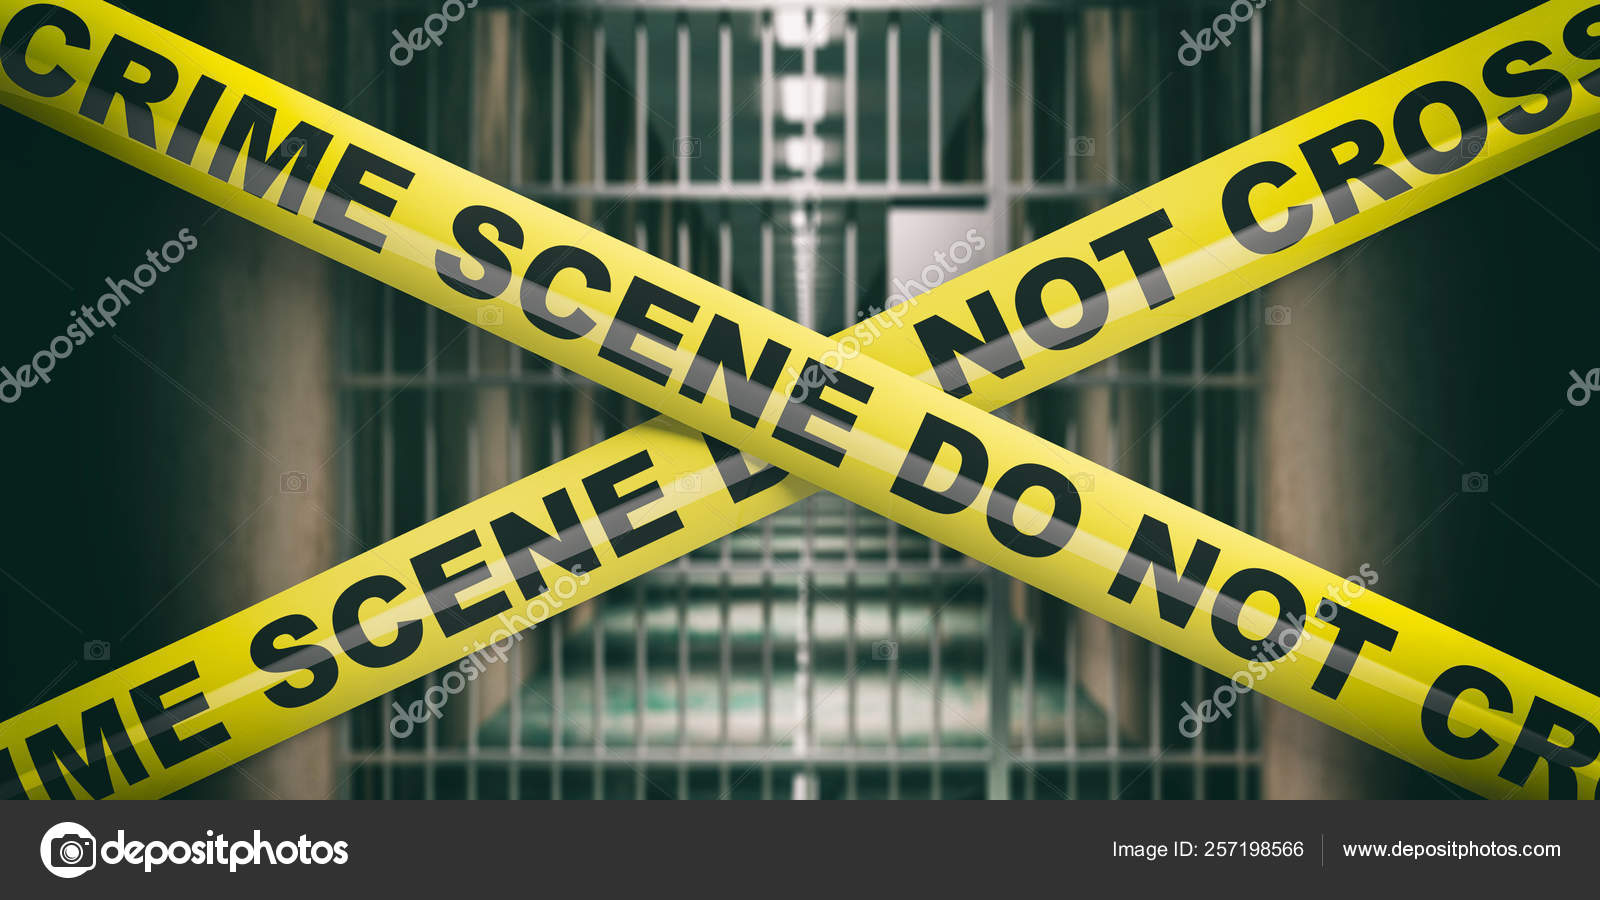 crime scene do not cross tape